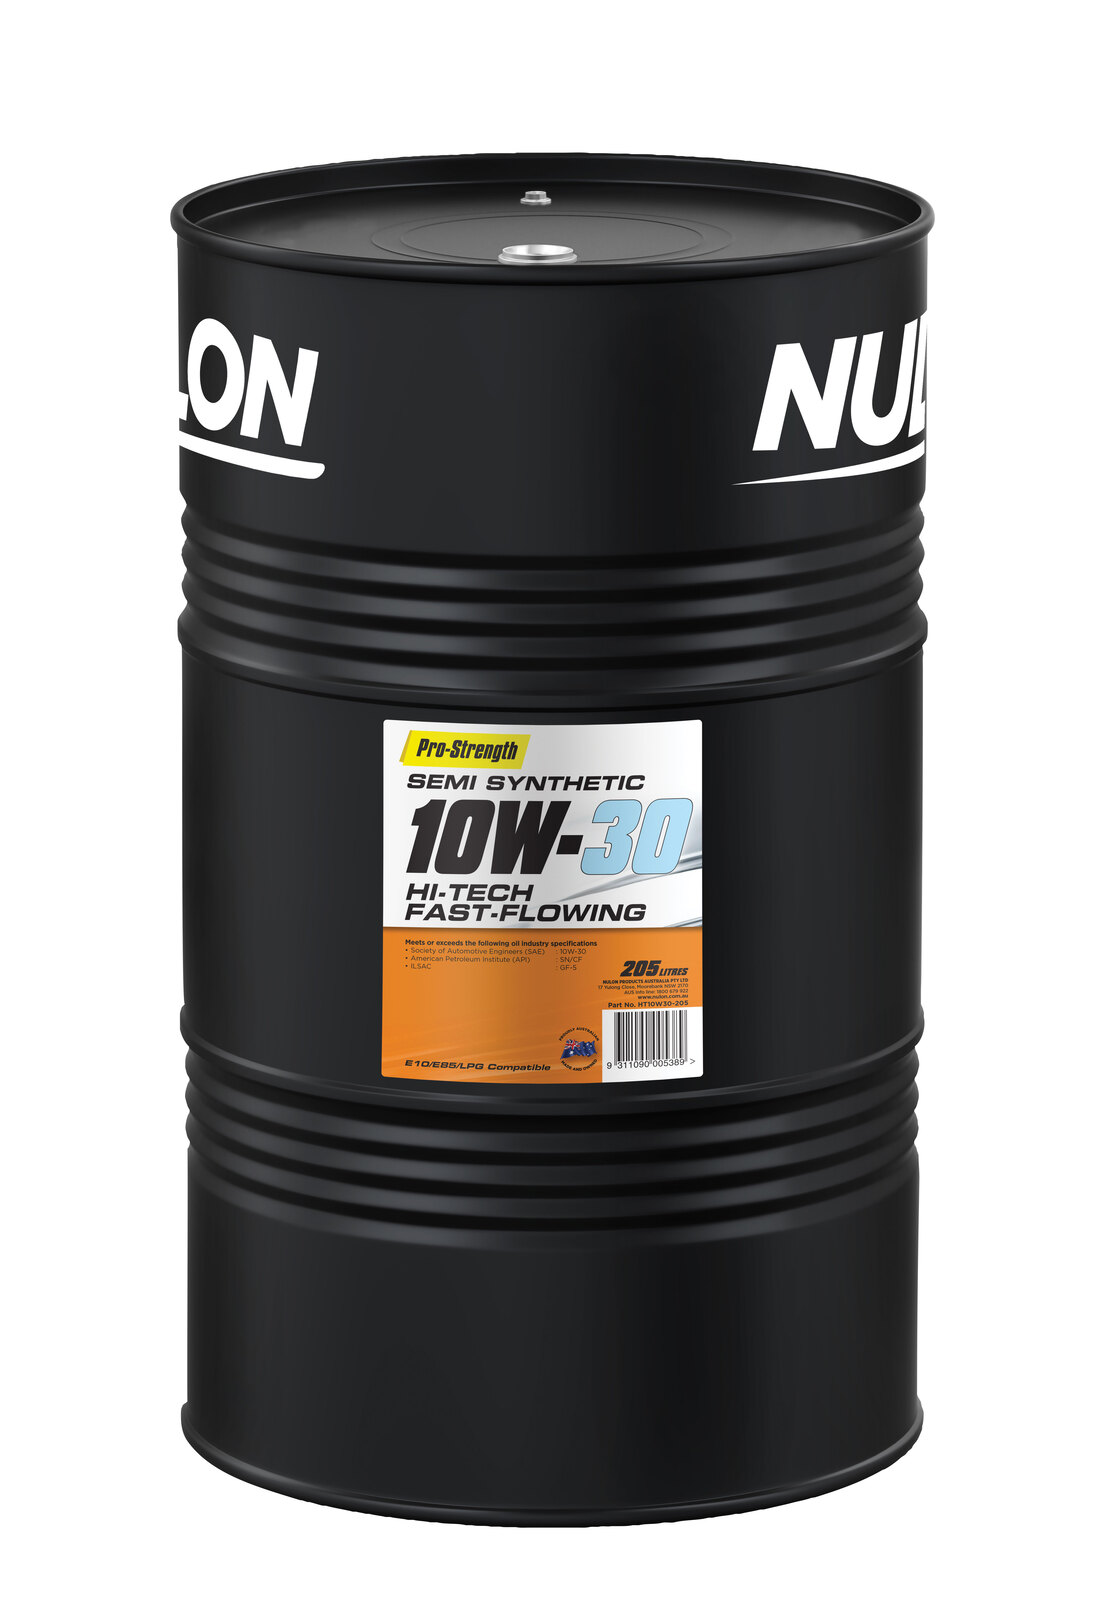 NULON Hi-Tech Fast Flow Engine Oil 205L Drum, Each